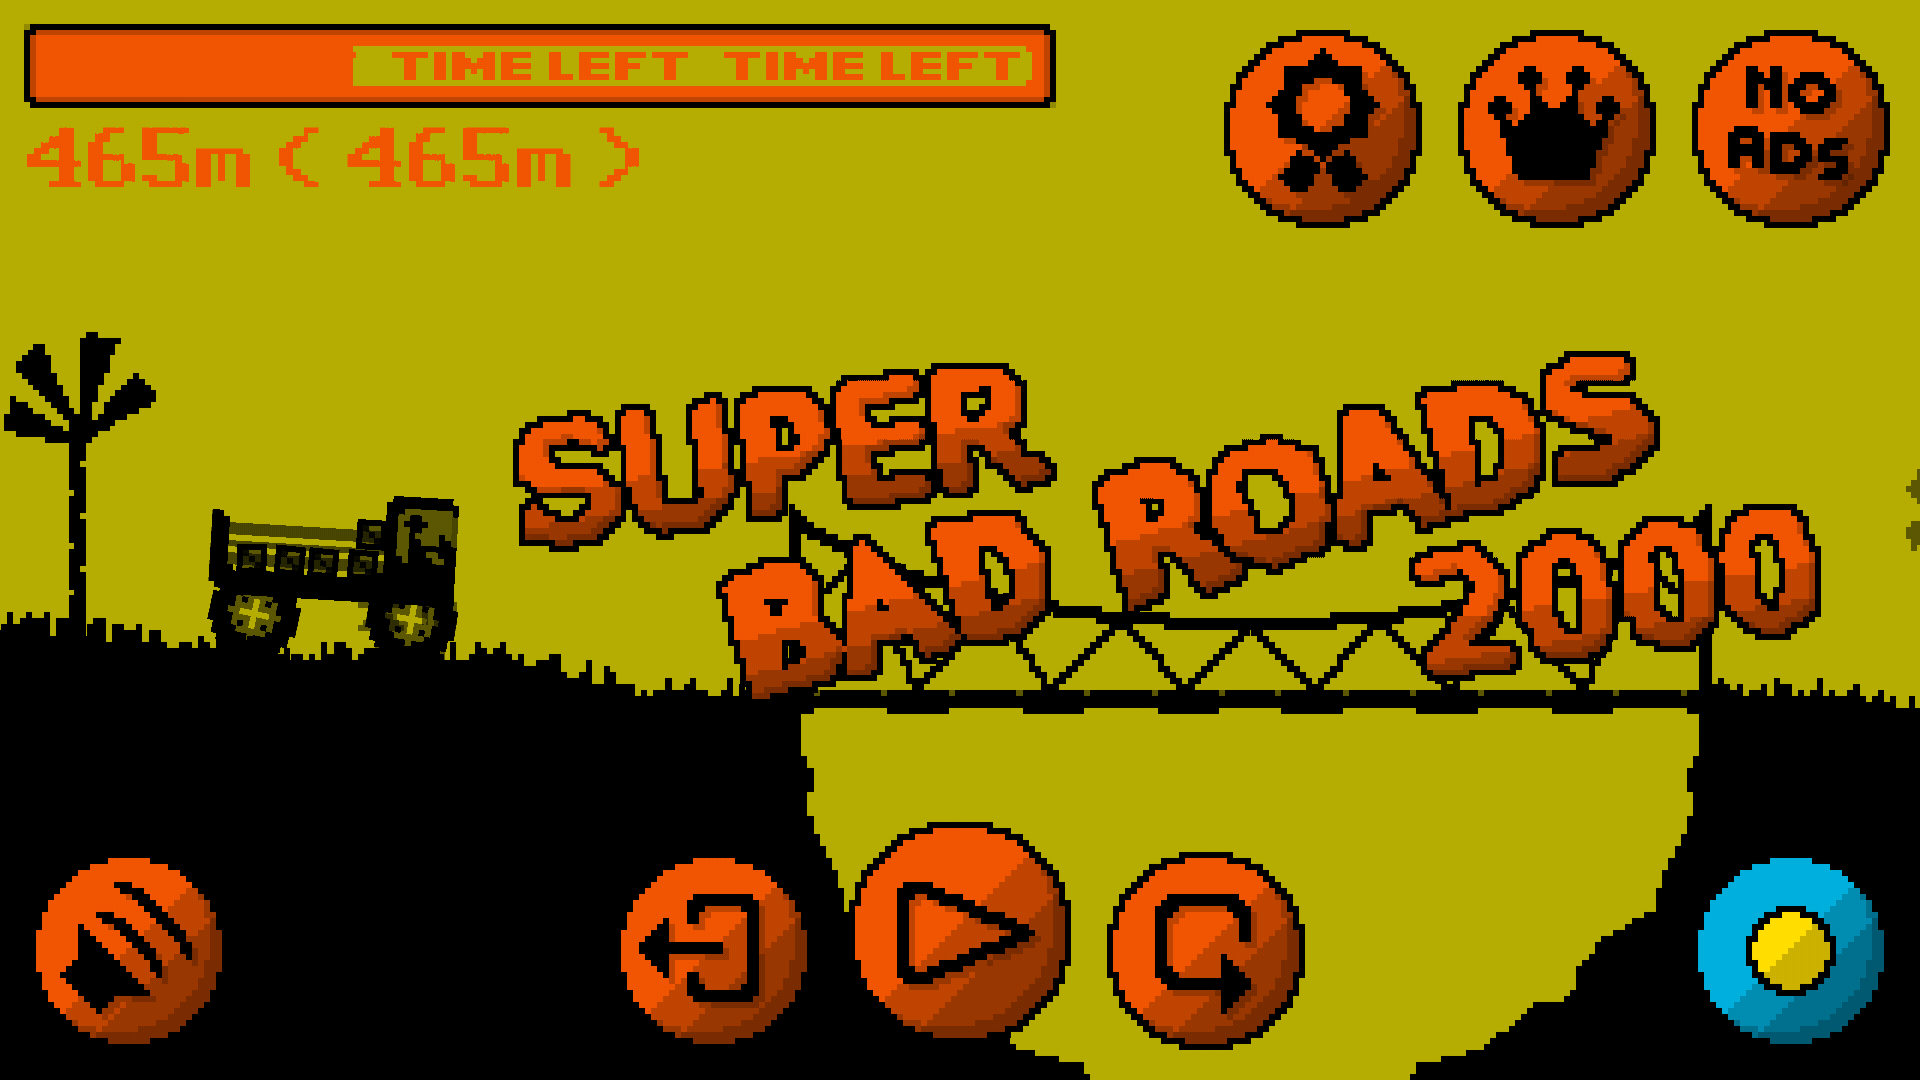 Super Bad Roads 2000 게임 스크린 샷